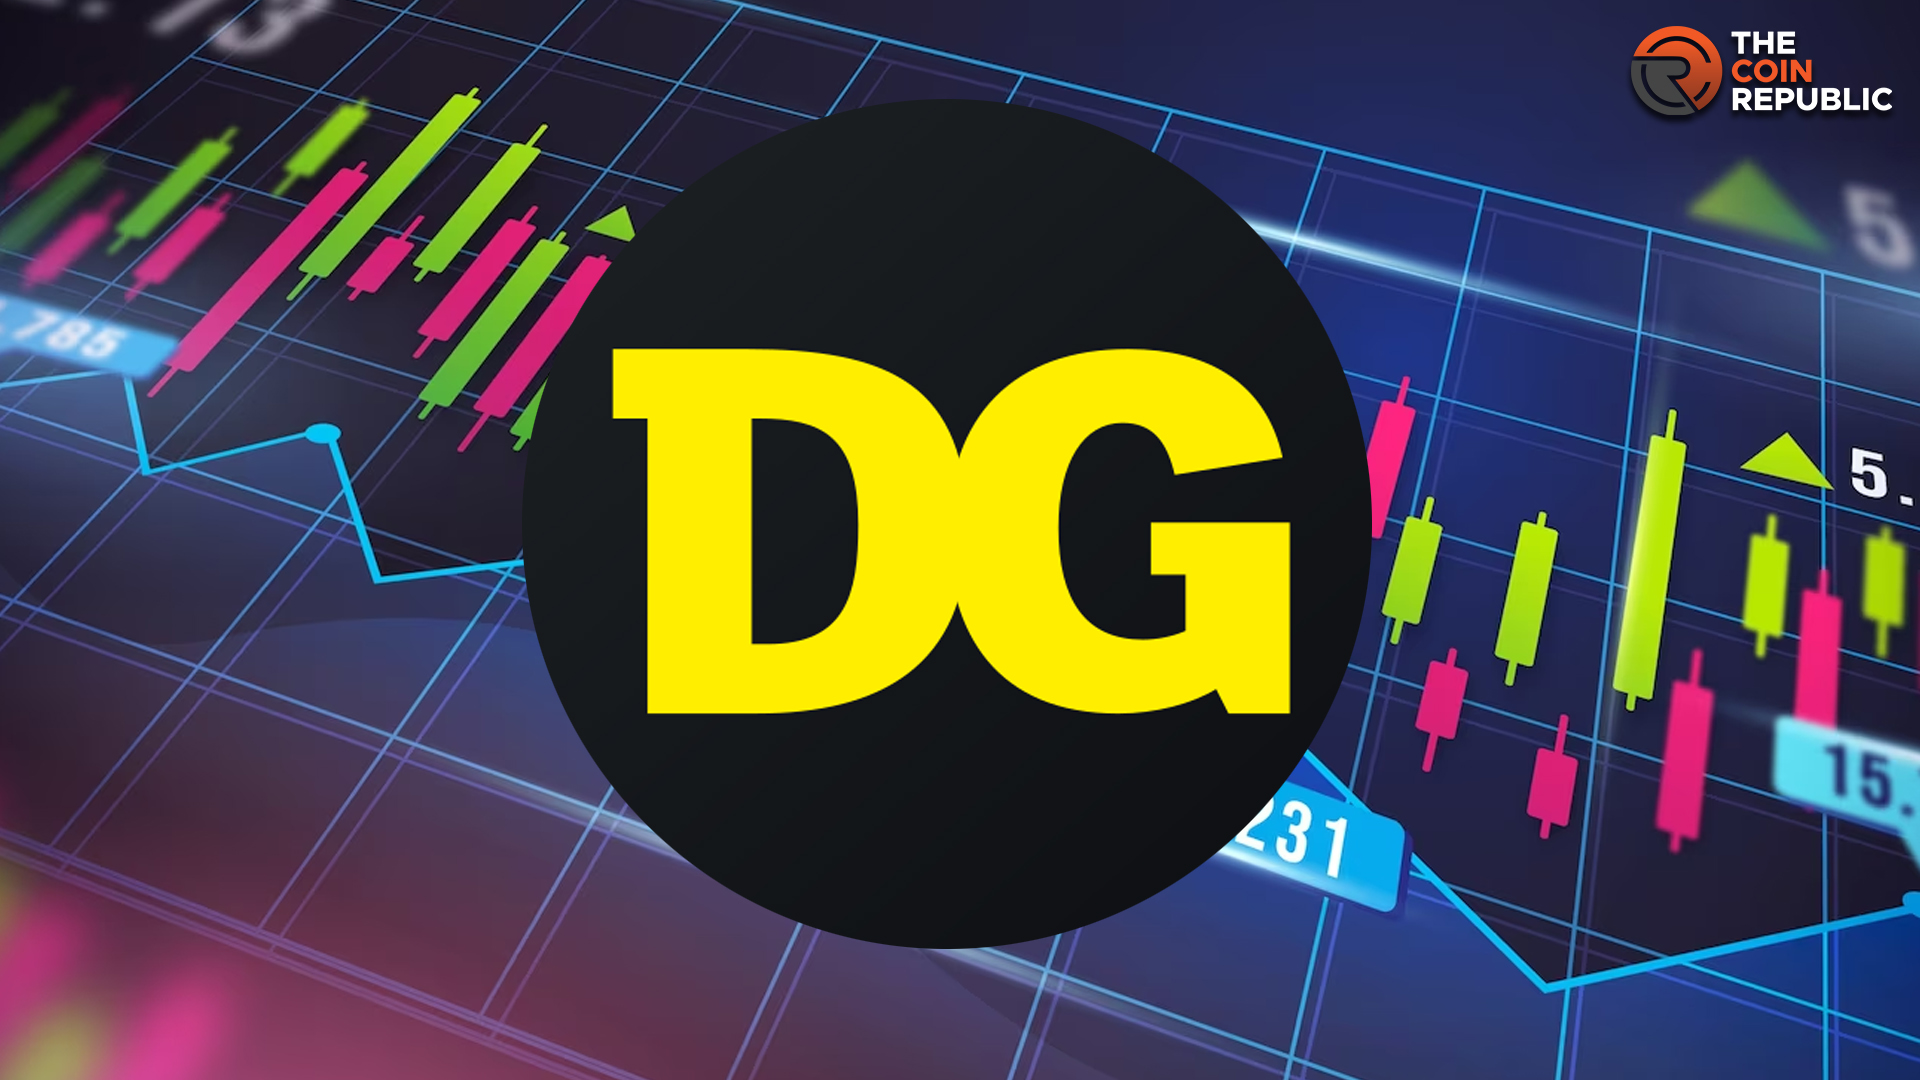 DG Stock: Dollar General Share Drops After Recent Quarter Result